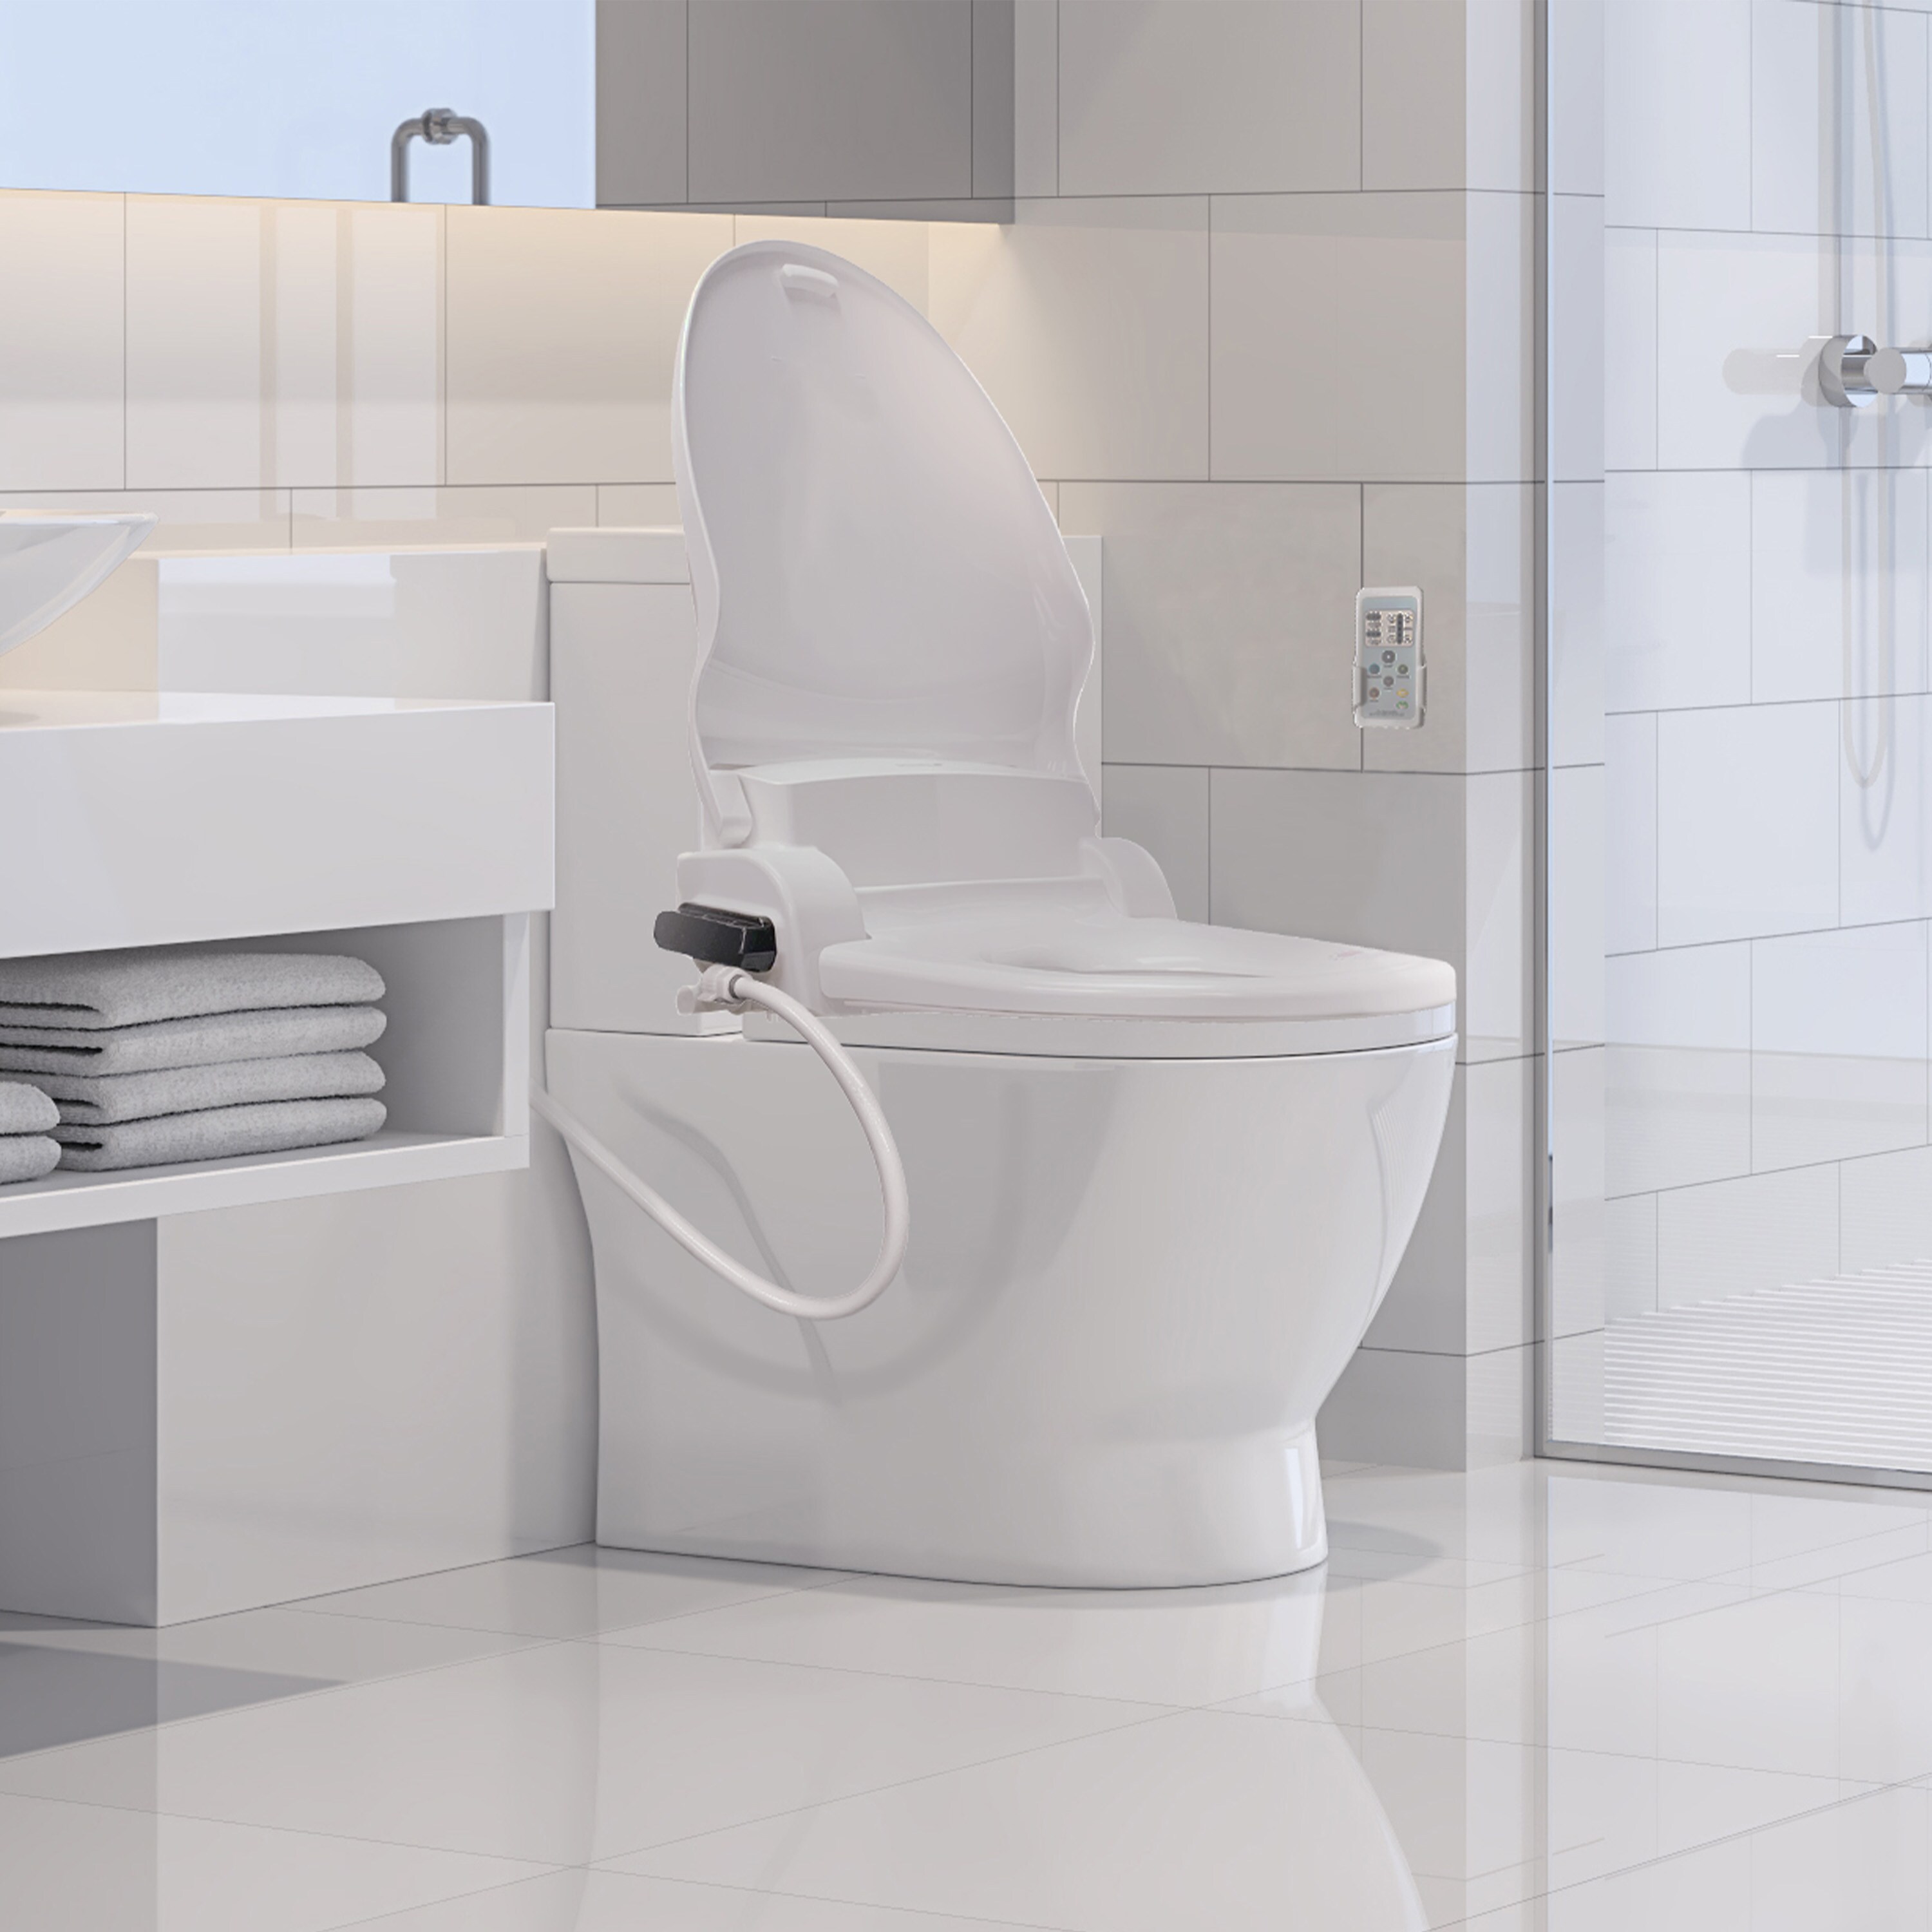 dejligt at møde dig forstørrelse blotte SmartBidet Plastic White Elongated Soft Close Heated Bidet Toilet Seat in  the Toilet Seats department at Lowes.com